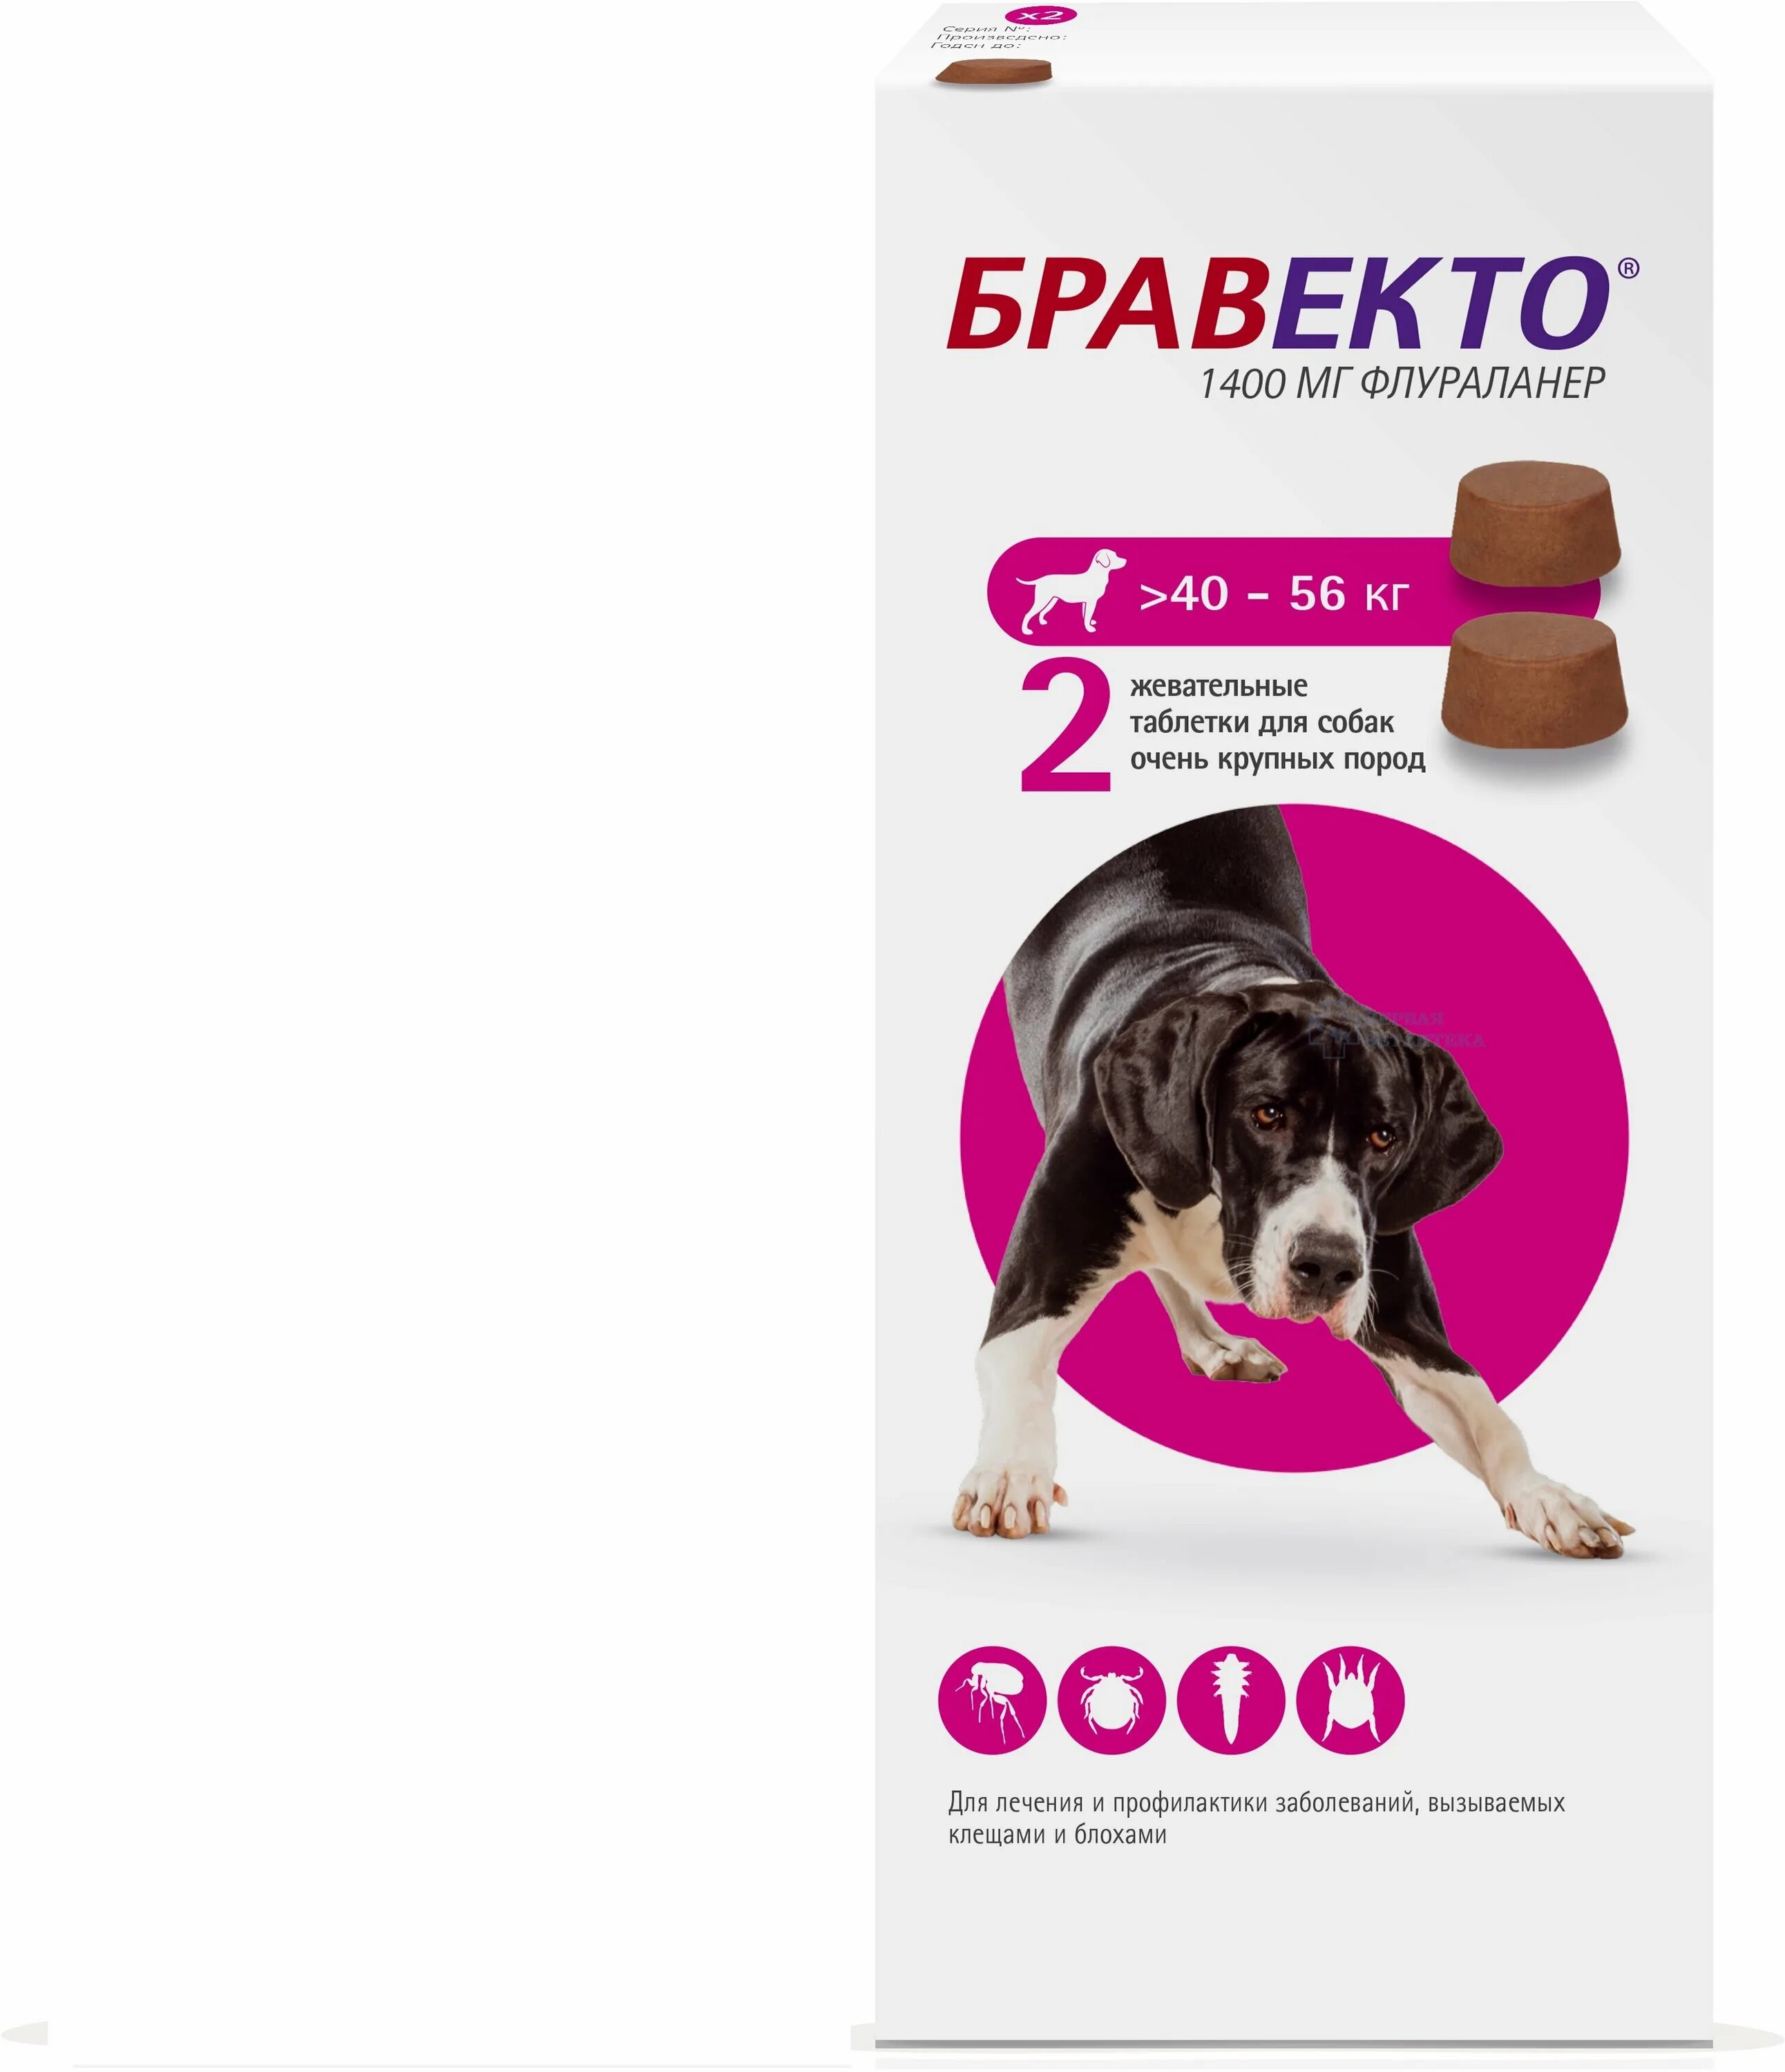 Бравекто таблетки для собак 40-56. Таблетка Бравекто для собак 20-40 2 таблетка. Бравекто (MSD animal Health) таблетки от блох и клещей для собак 40-56 кг. Бравекто 1400 мг для собак.